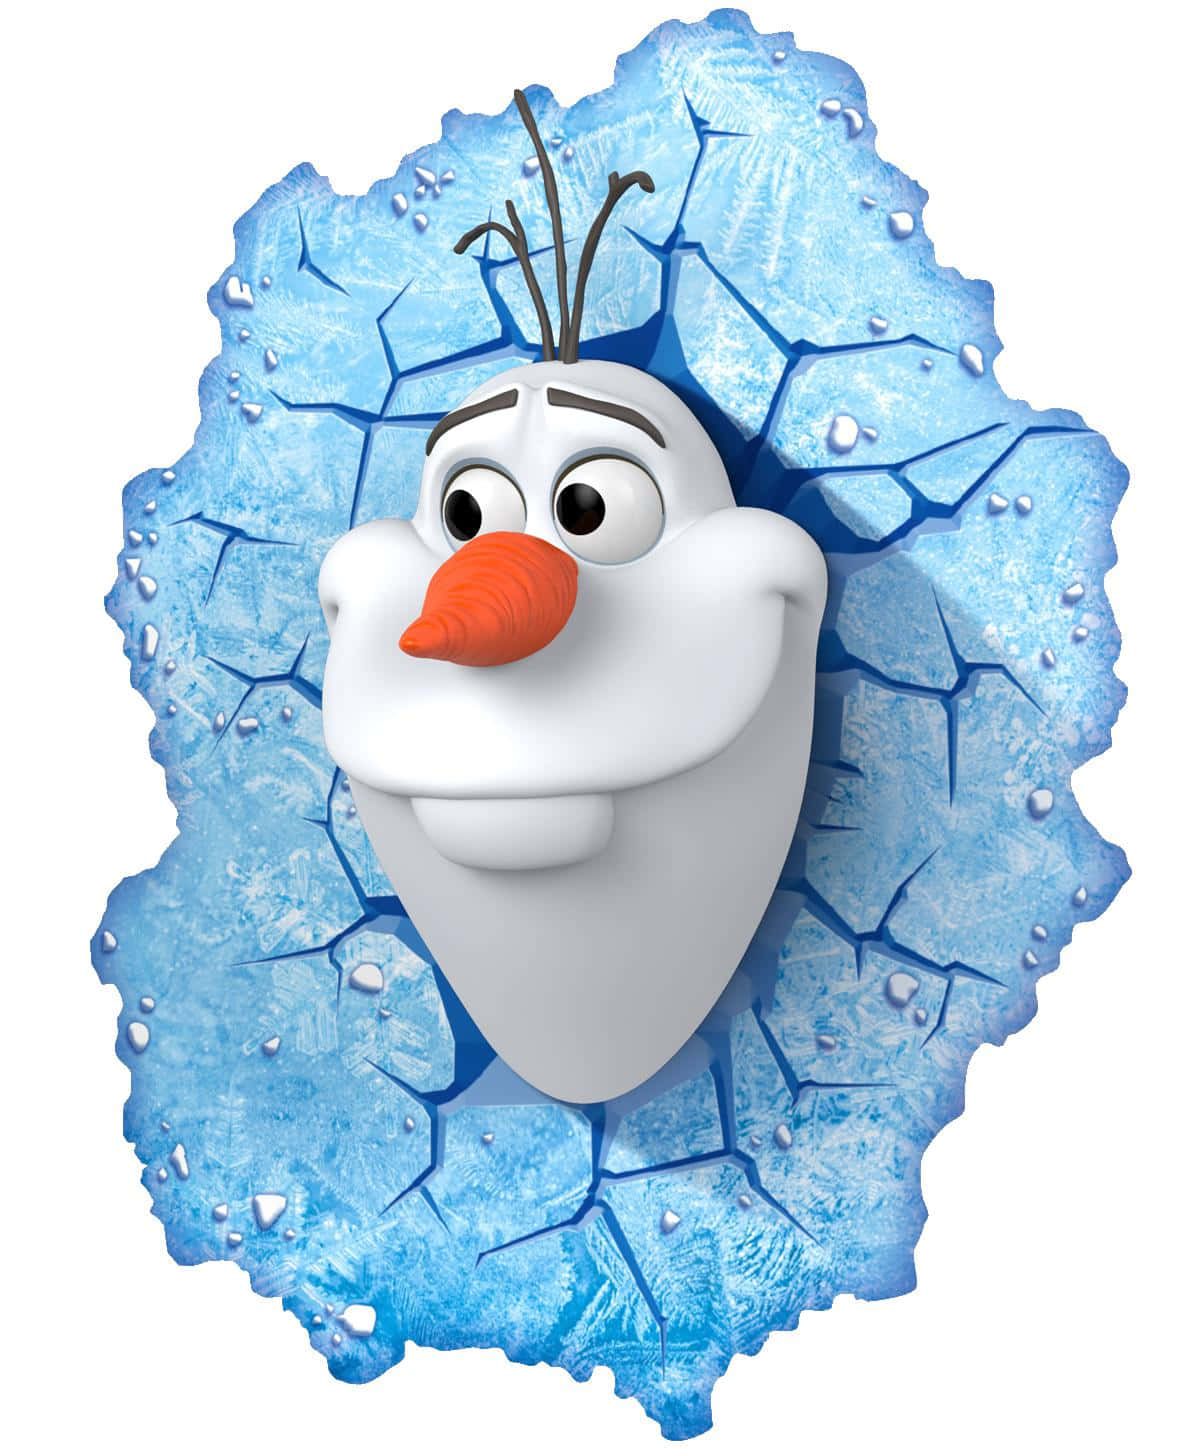 Lassuns Mit Olaf Im Schnee Spaß Haben!